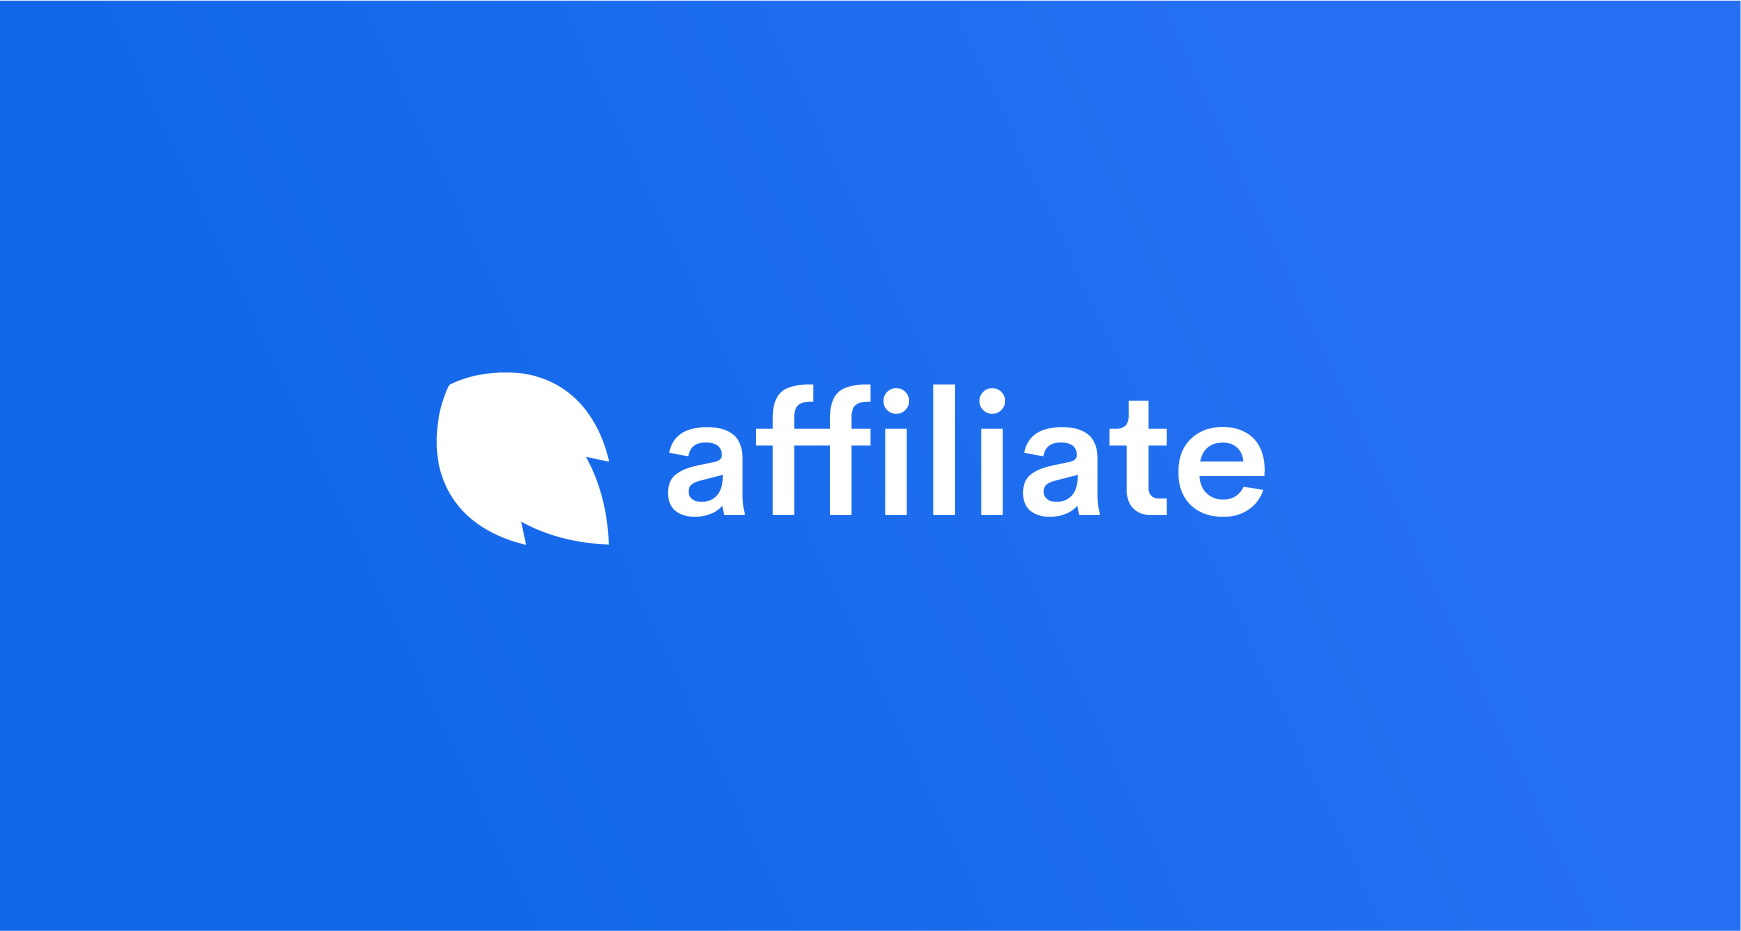 affiliate-image-1